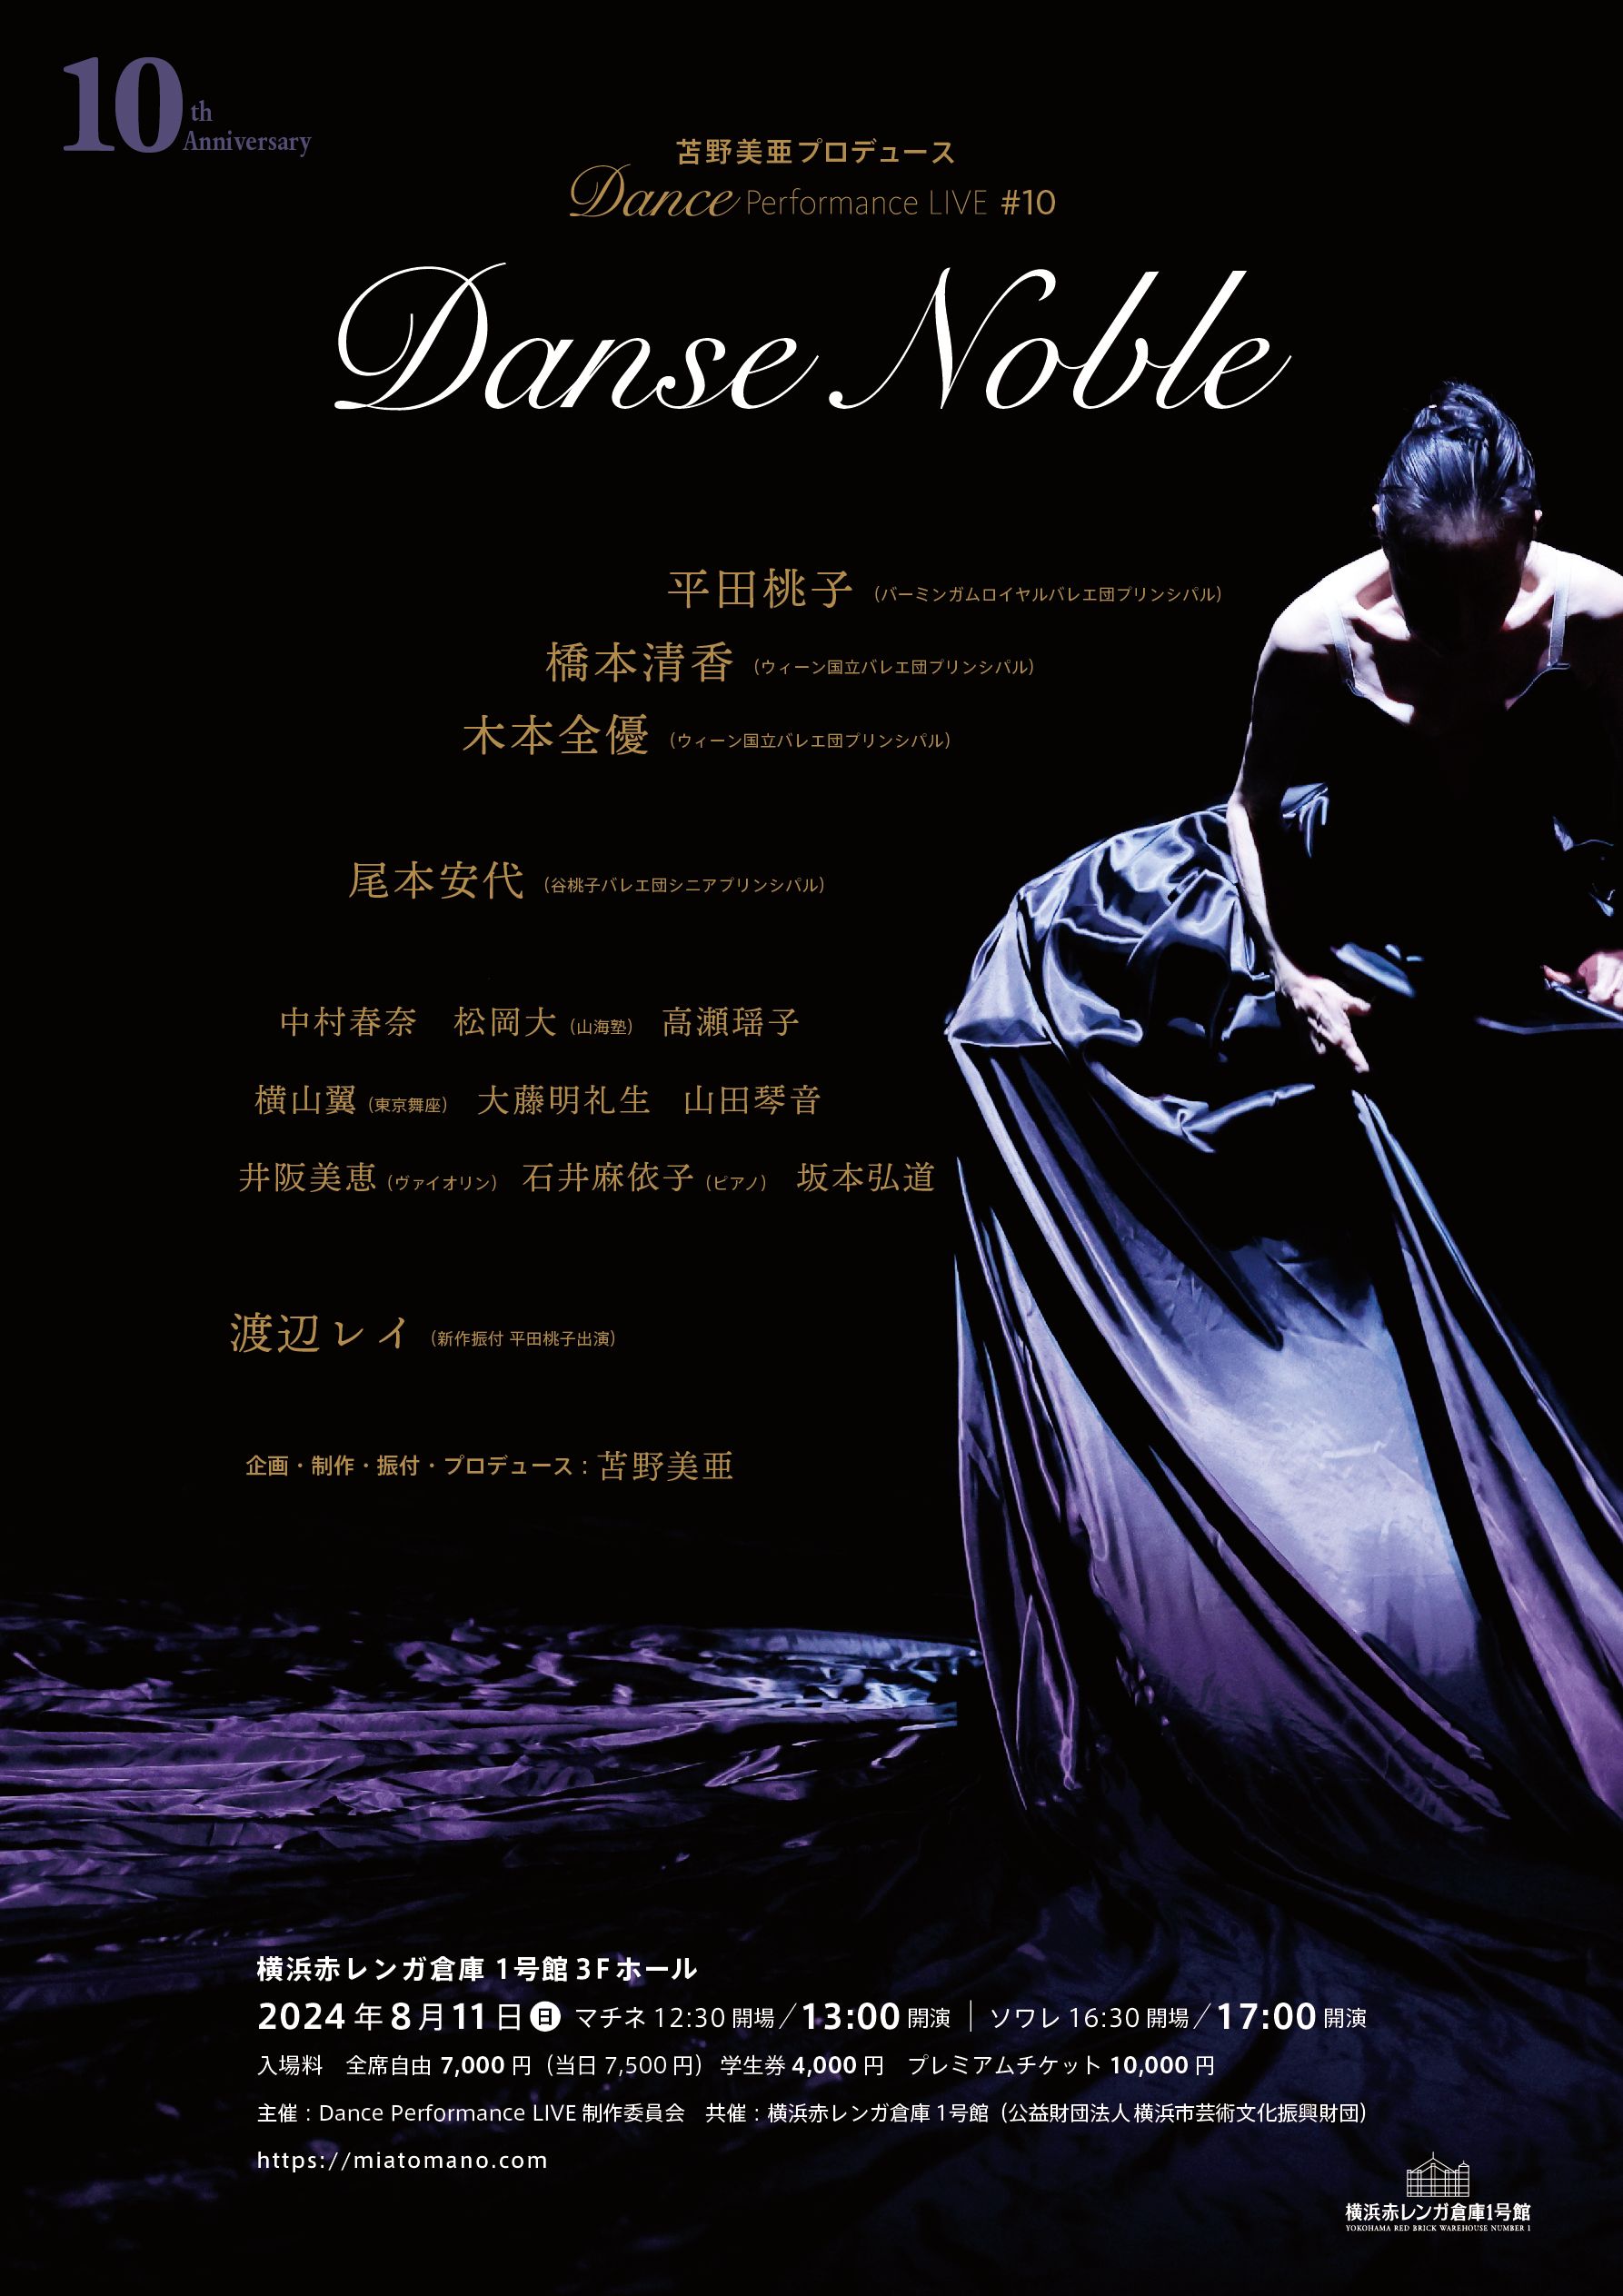 横浜赤レンガ倉庫 「苫野美亜プロデュース Dance Performance LIVE #10 10th Anniversary Danse Noble」